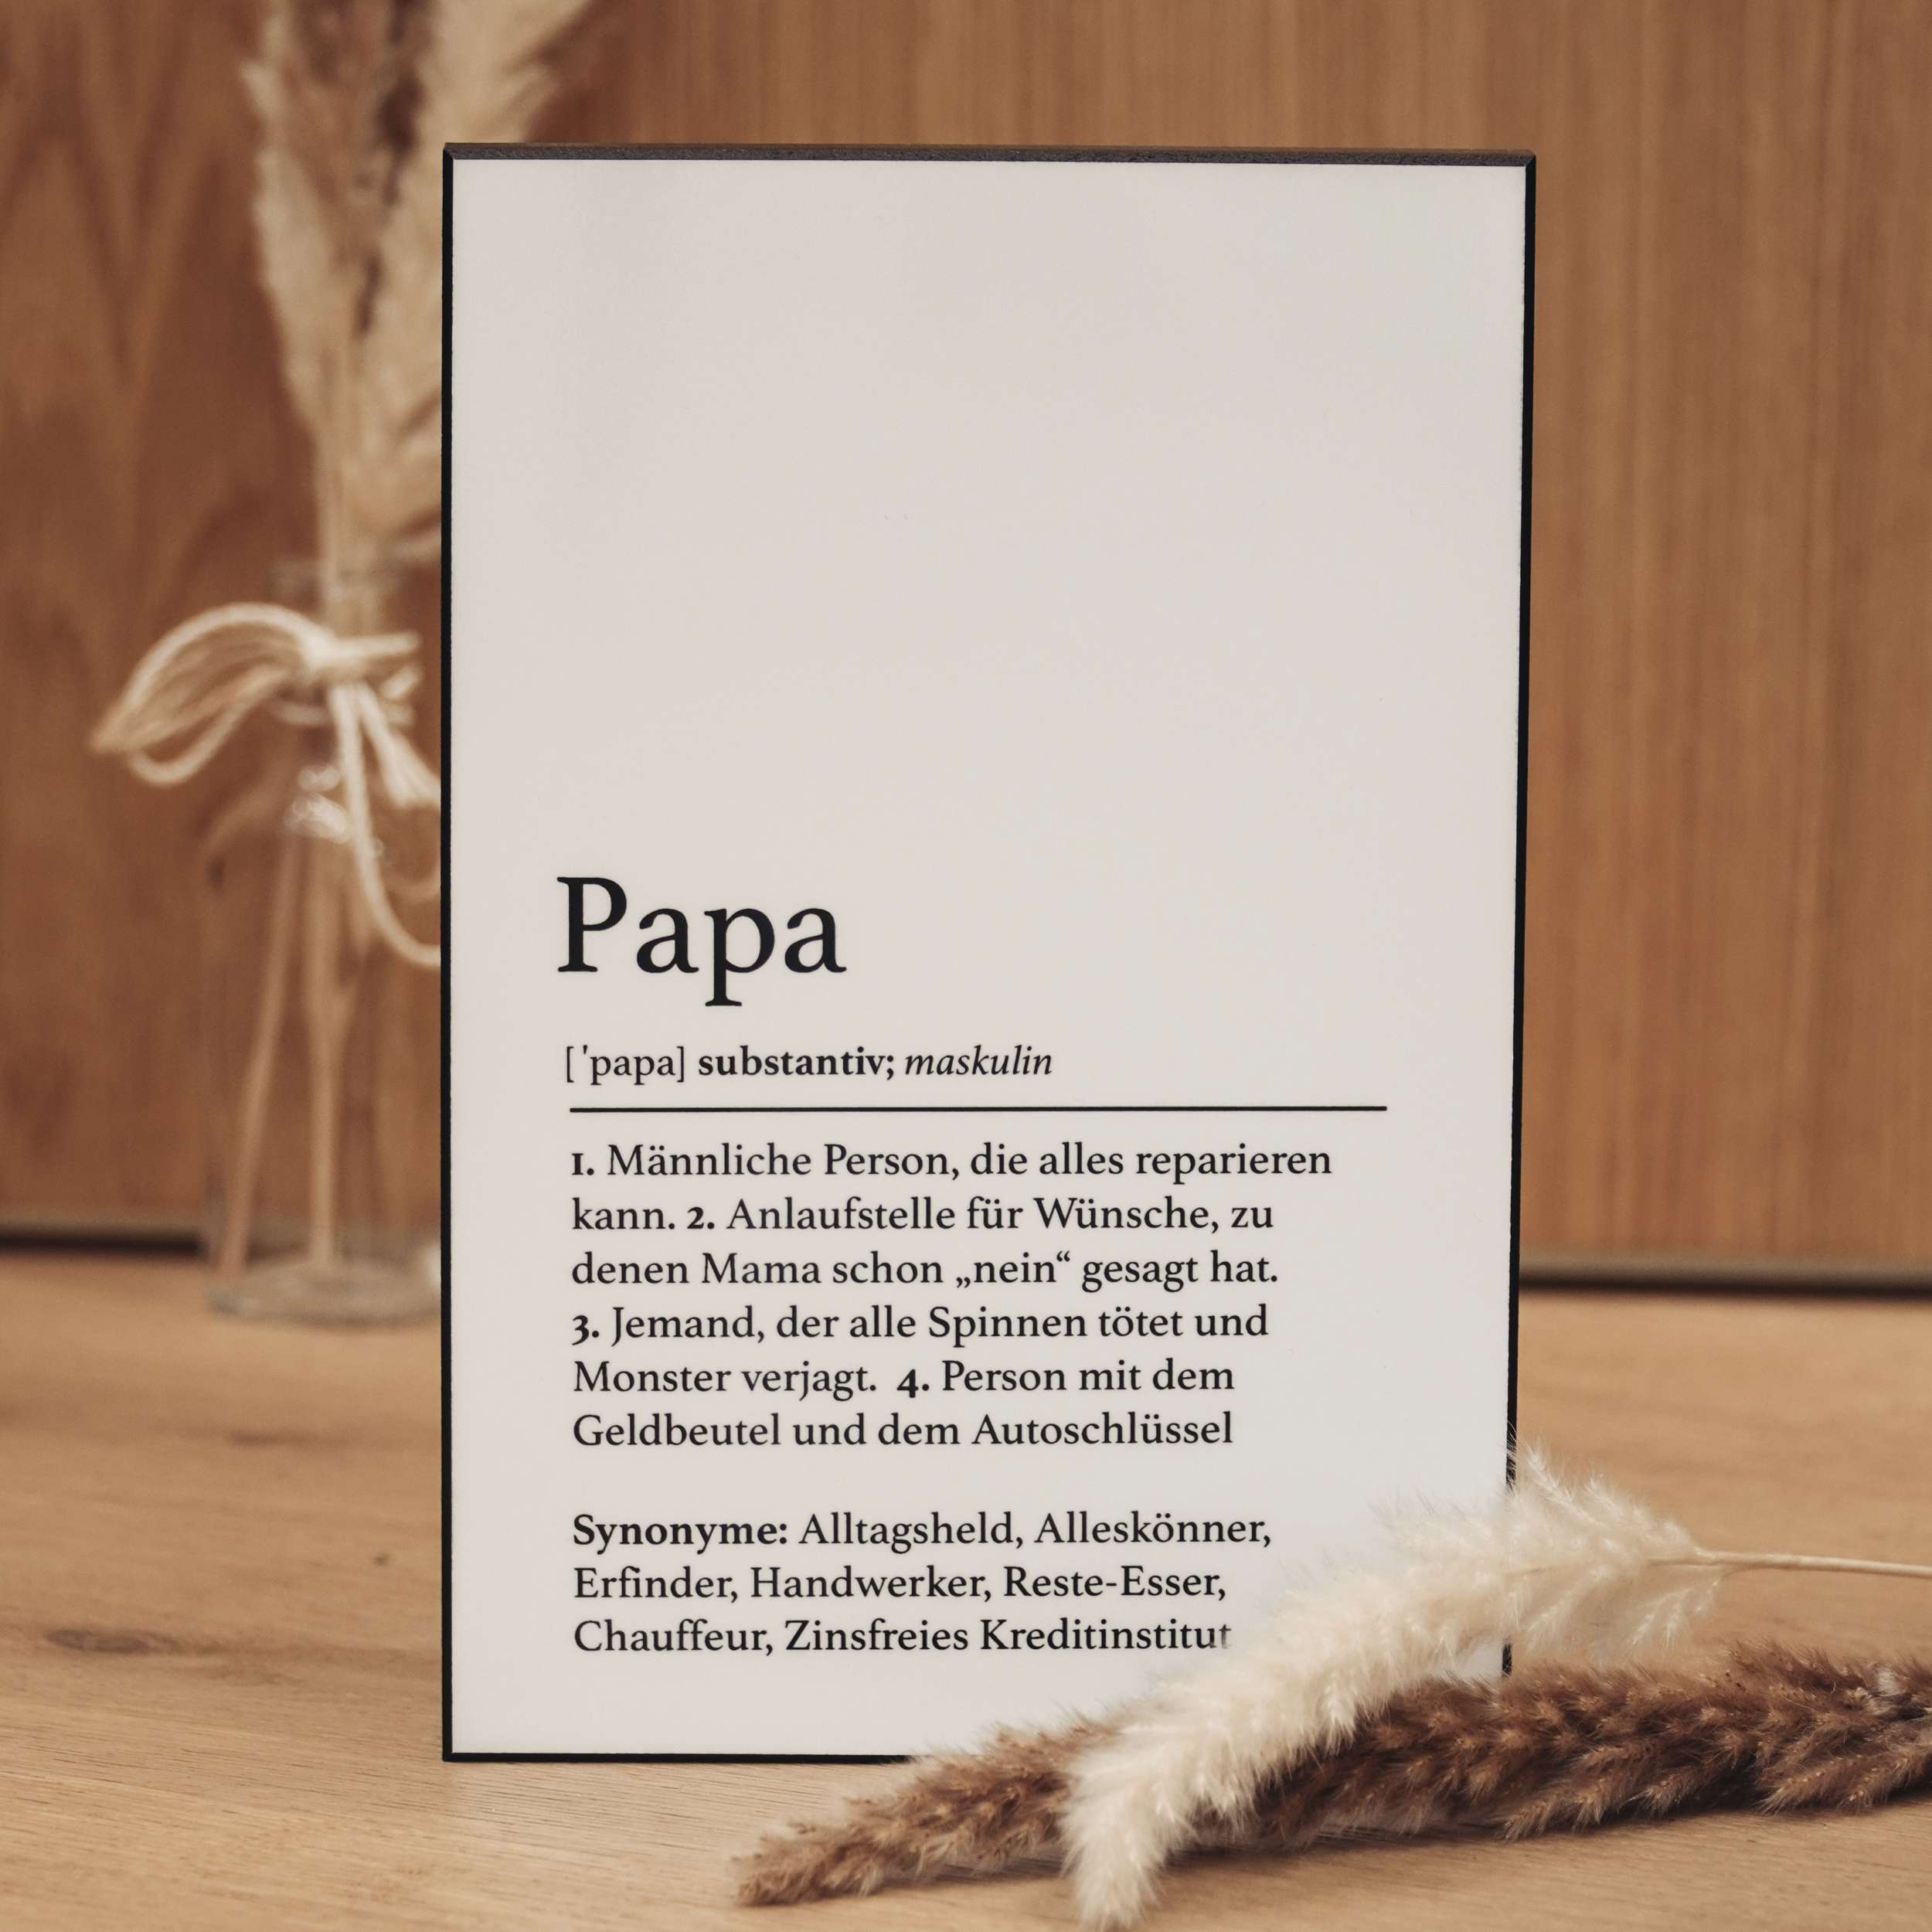 Handgefertigte Definitionstafel „Papa“ aus erstklassigem Material – das ideale Geschenk für deinen Papa.